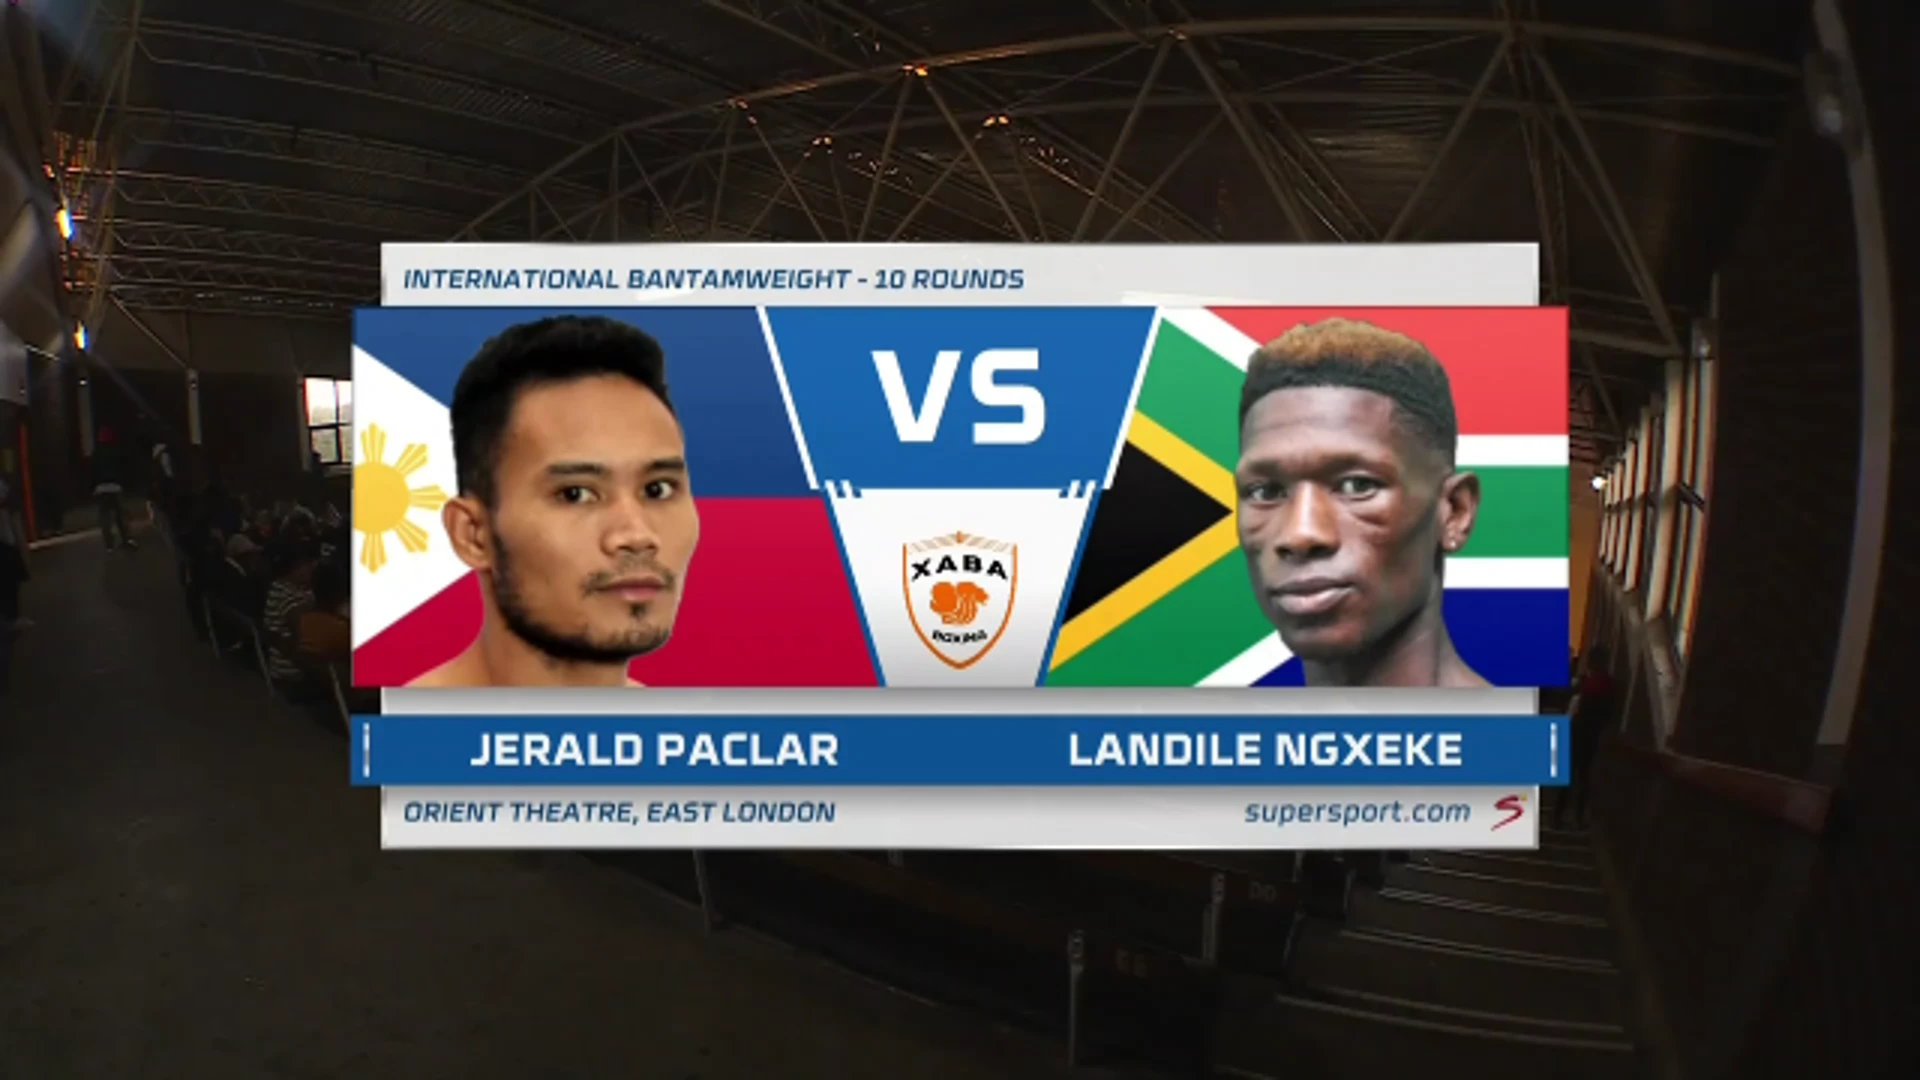 Jerald Paclar v Landile Ngxeke | Bantamweight fight | Highlights | Xaba Boxing Promotions